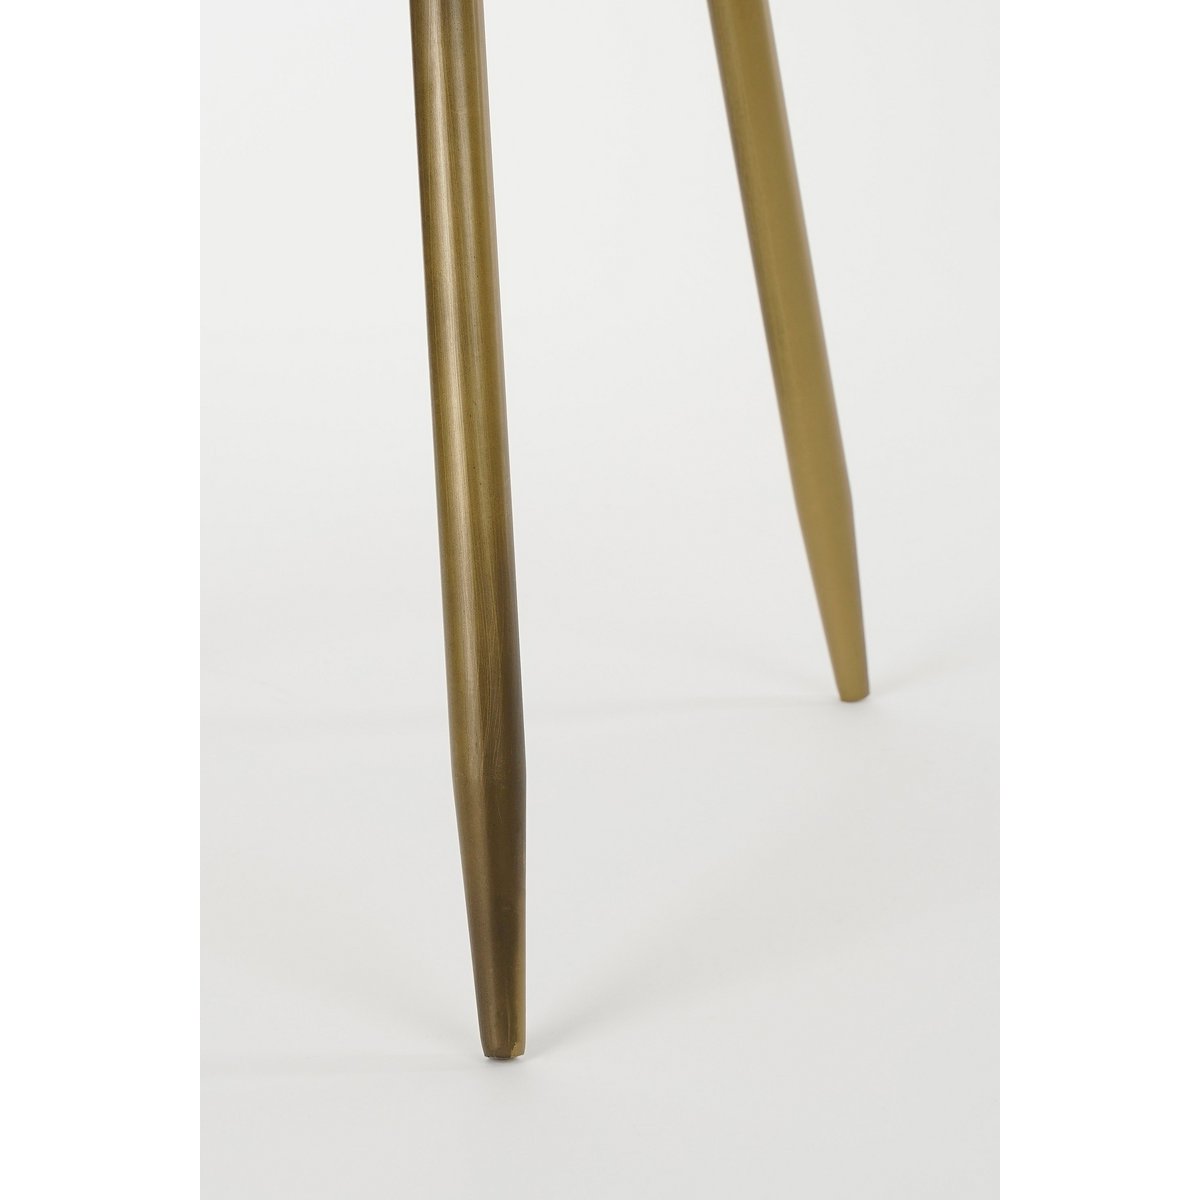 Flores Beistelltisch – H42x Ø40 cm – Metall – Bronze